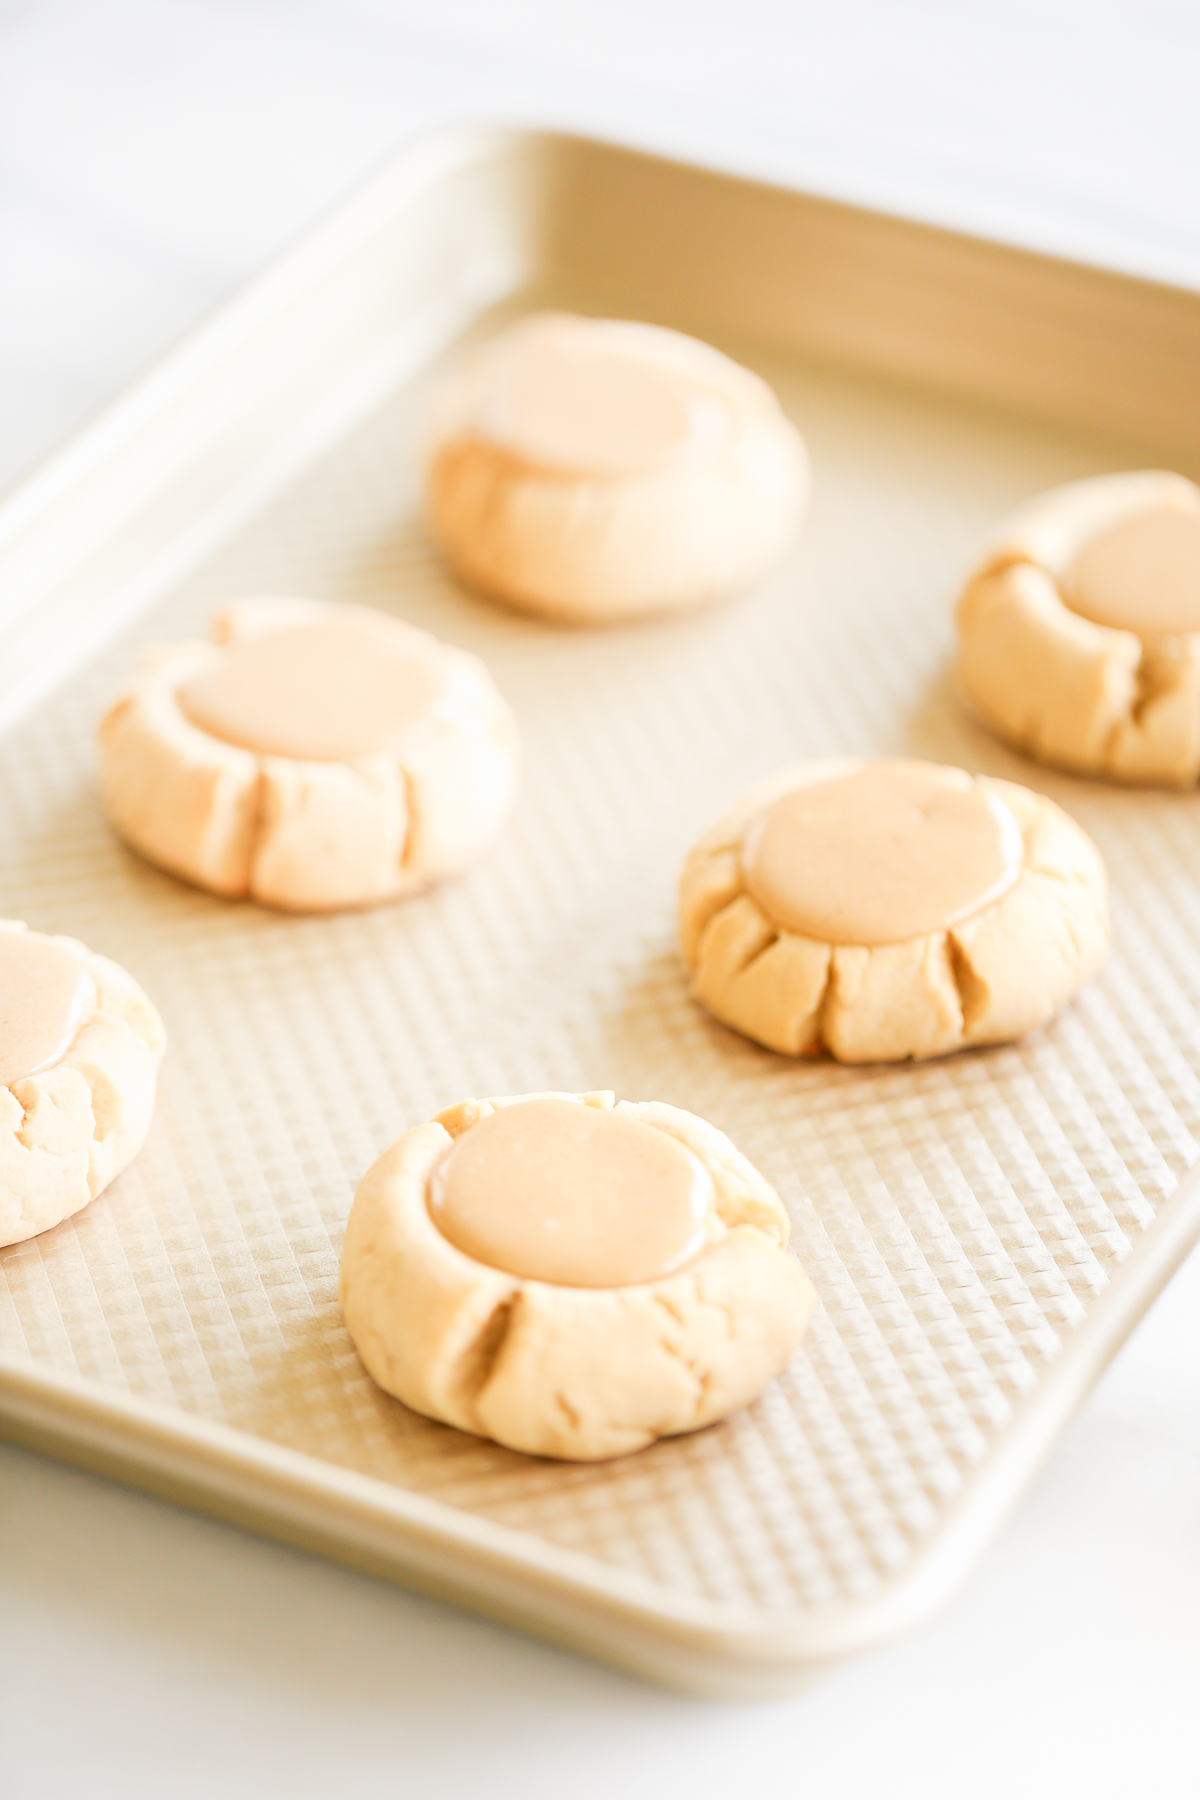 Caramel peanut butter cookies on a baking sheet.